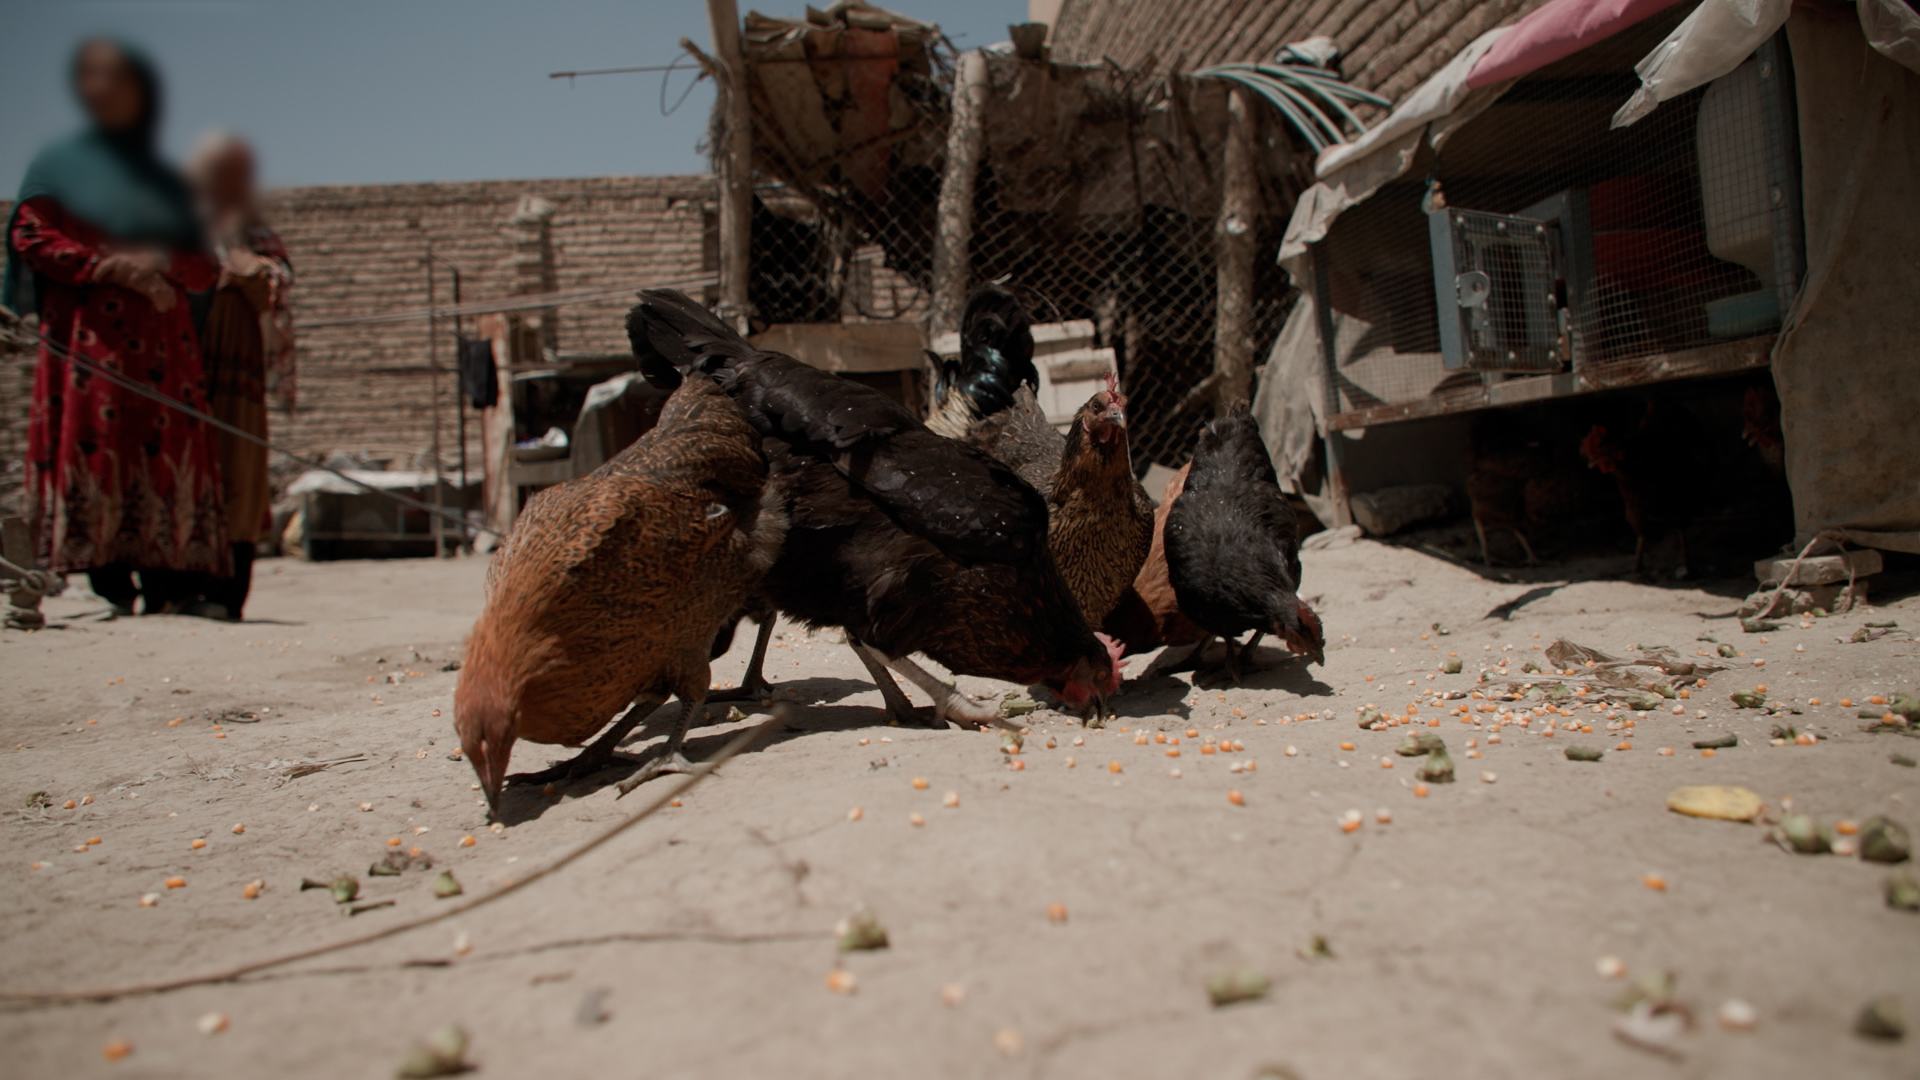 قام مشروع التنمية البديلة التابع لمكتب الأمم المتحدة المعني بالمخدرات والجريمة بتقديم الدجاج للمستفيدين في قرية دوغاباد، كابول، أفغانستان.